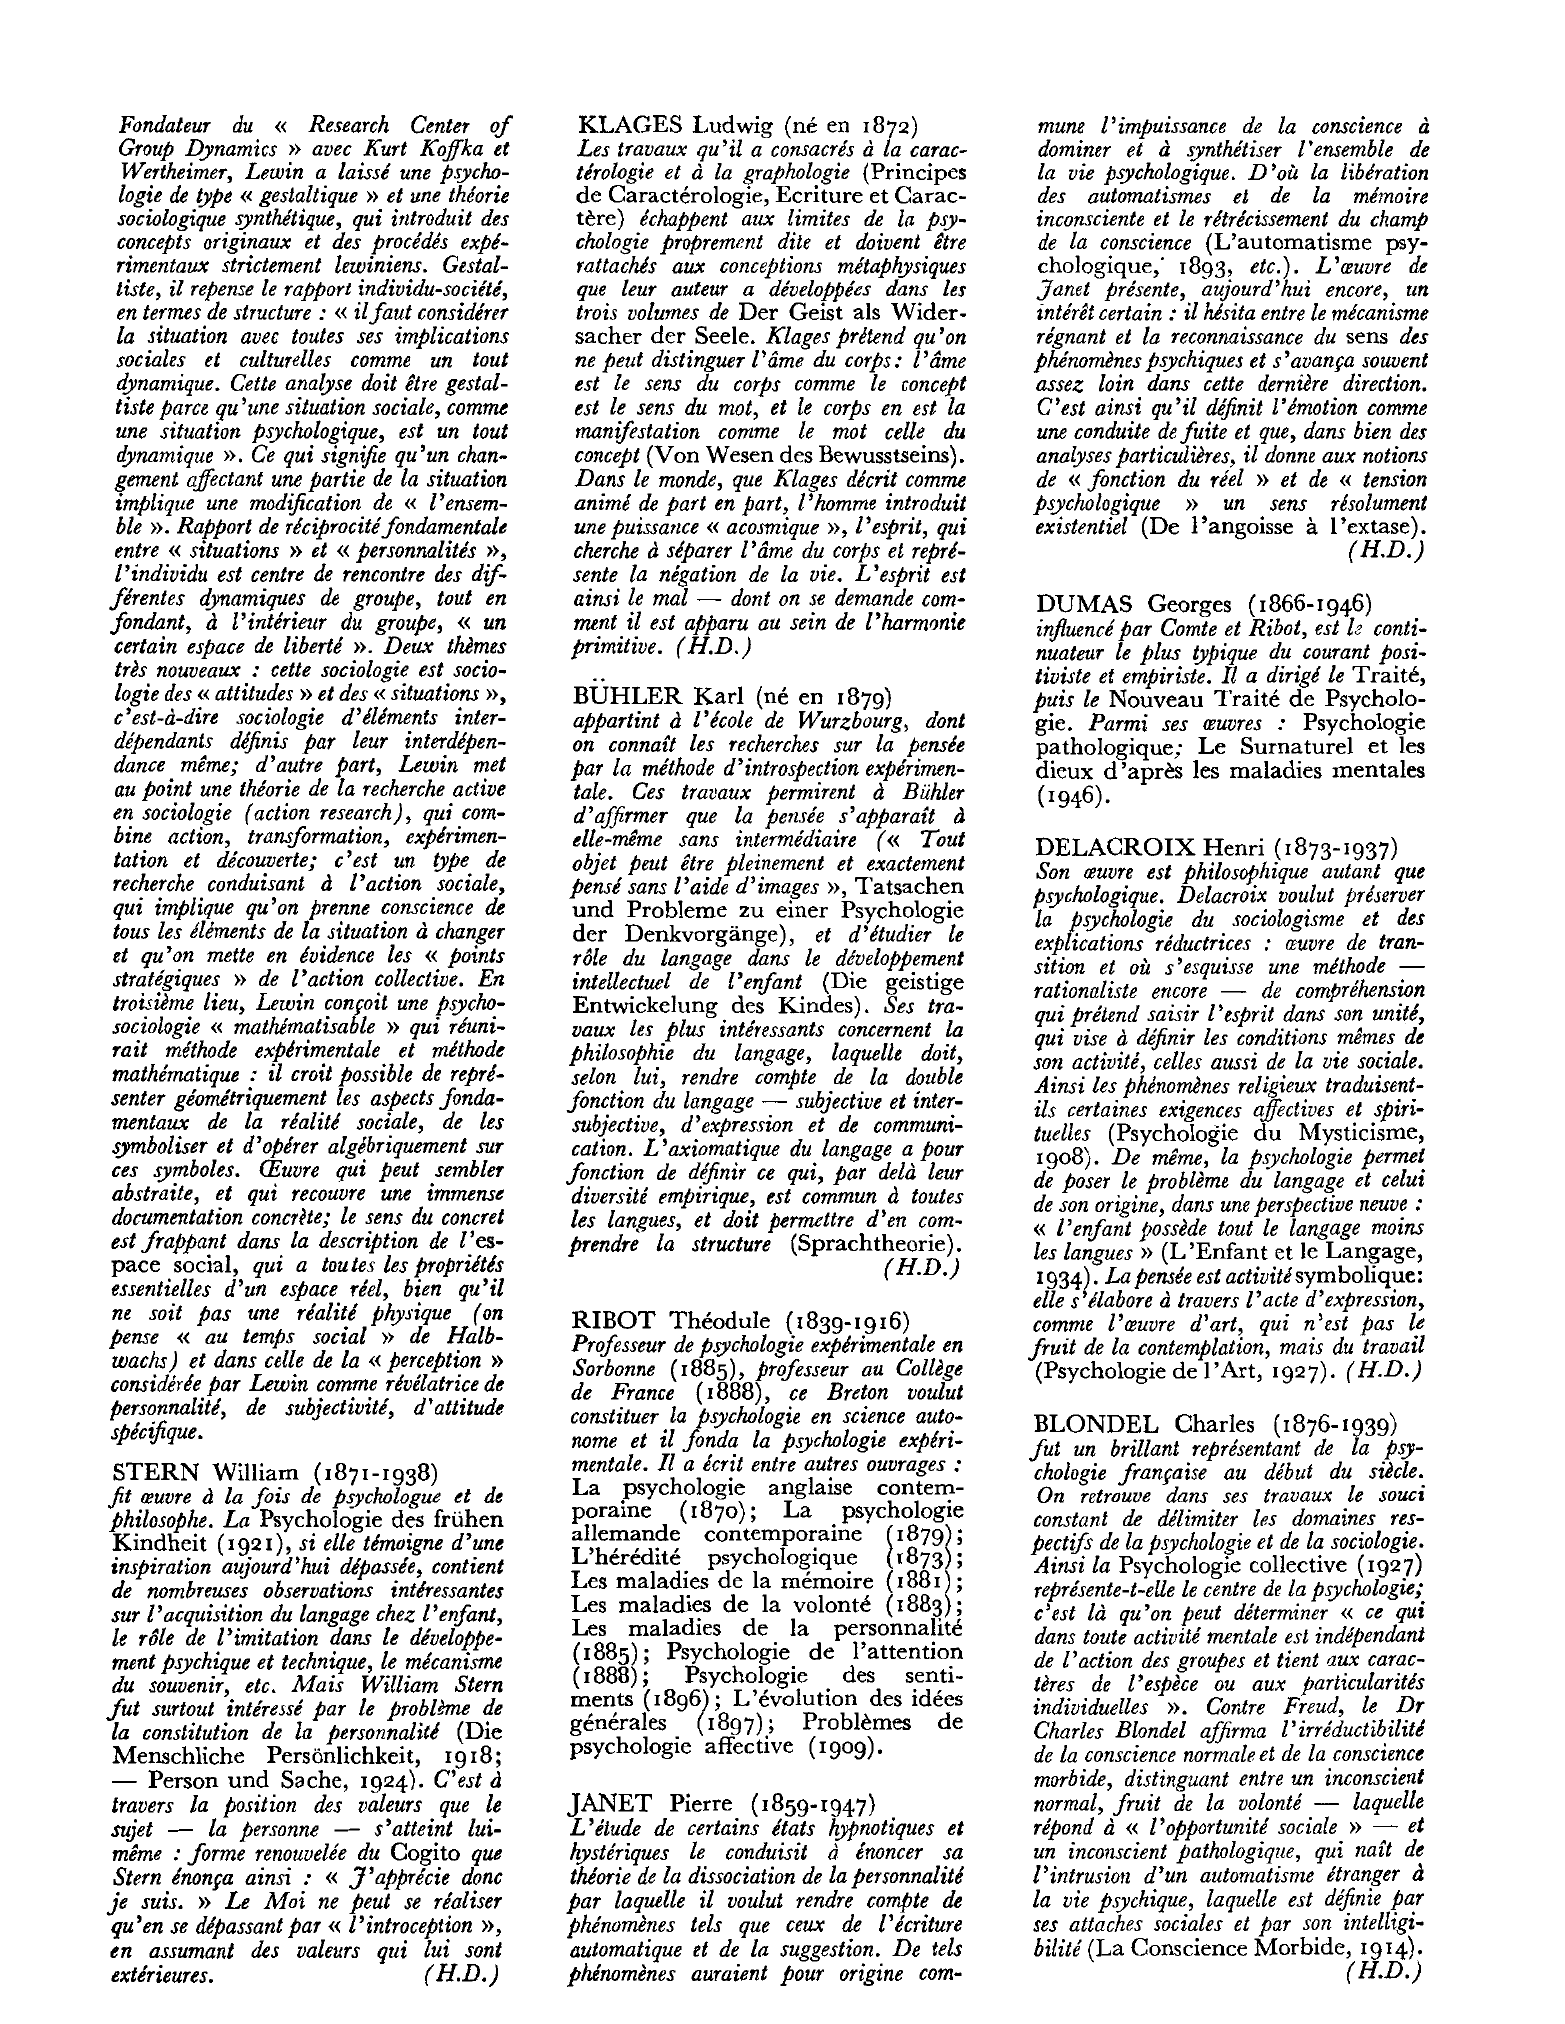 Prévisualisation du document dons verbales et la parole (1934); La jalousie amoureuse (1947); L'unité de la psychologie (1949).